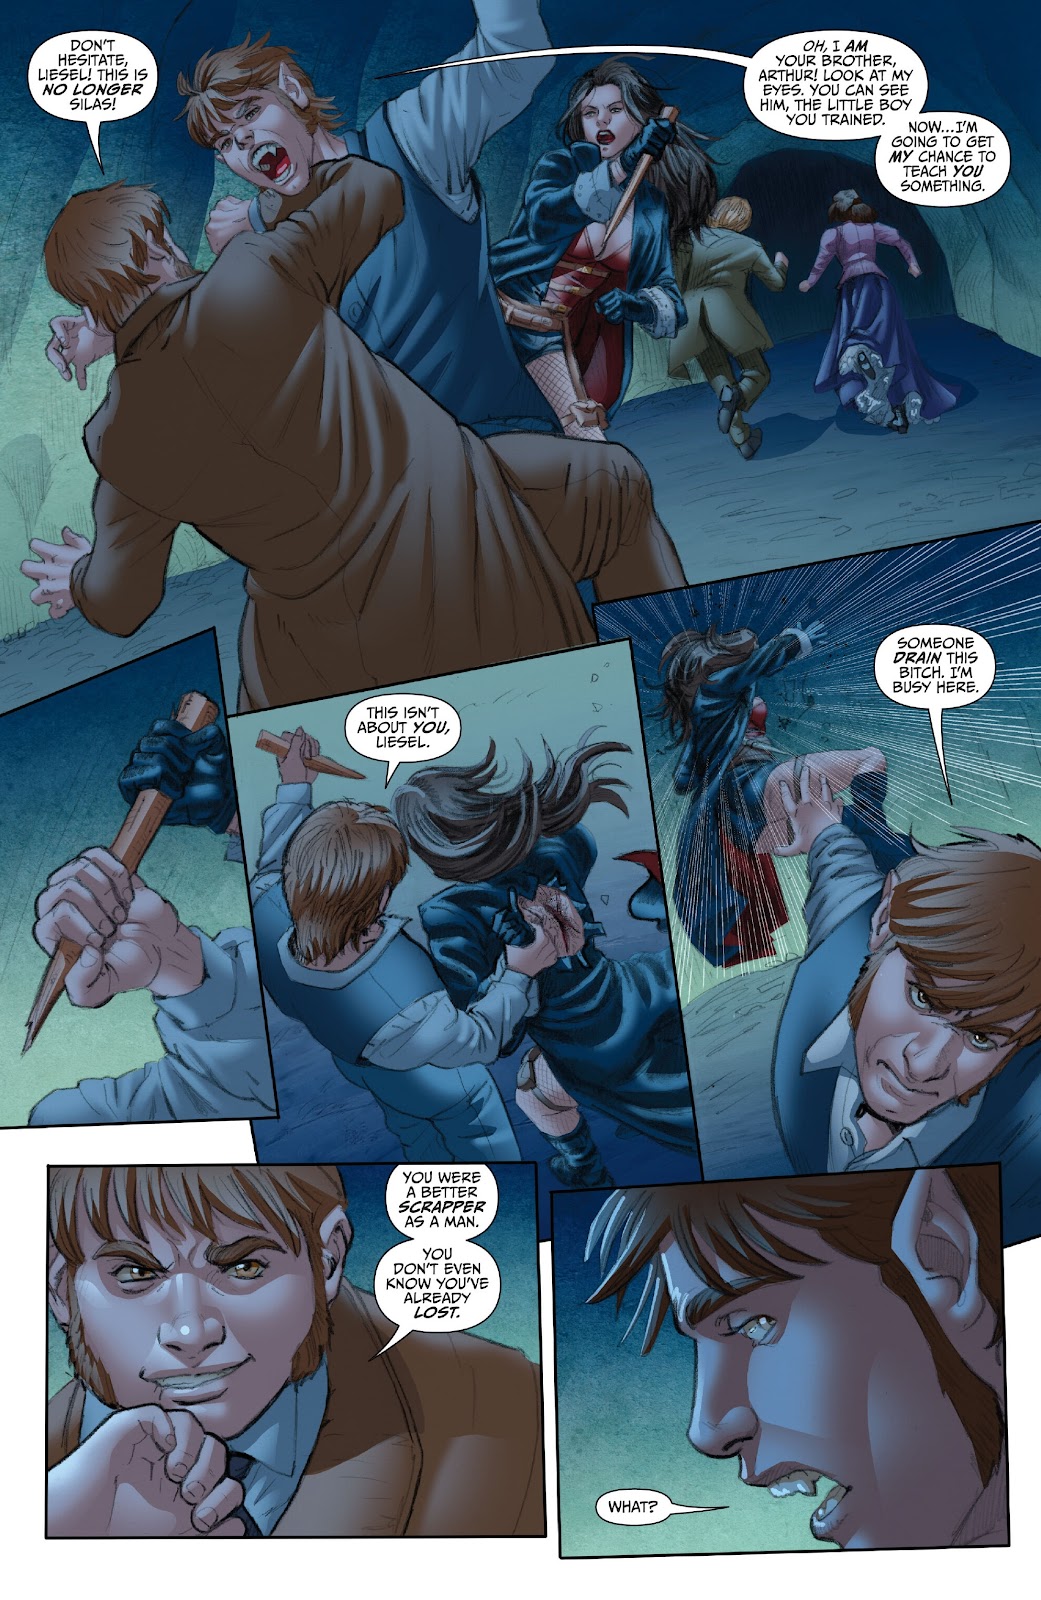 Van Helsing: Vampire Hunter issue 3 - Page 7